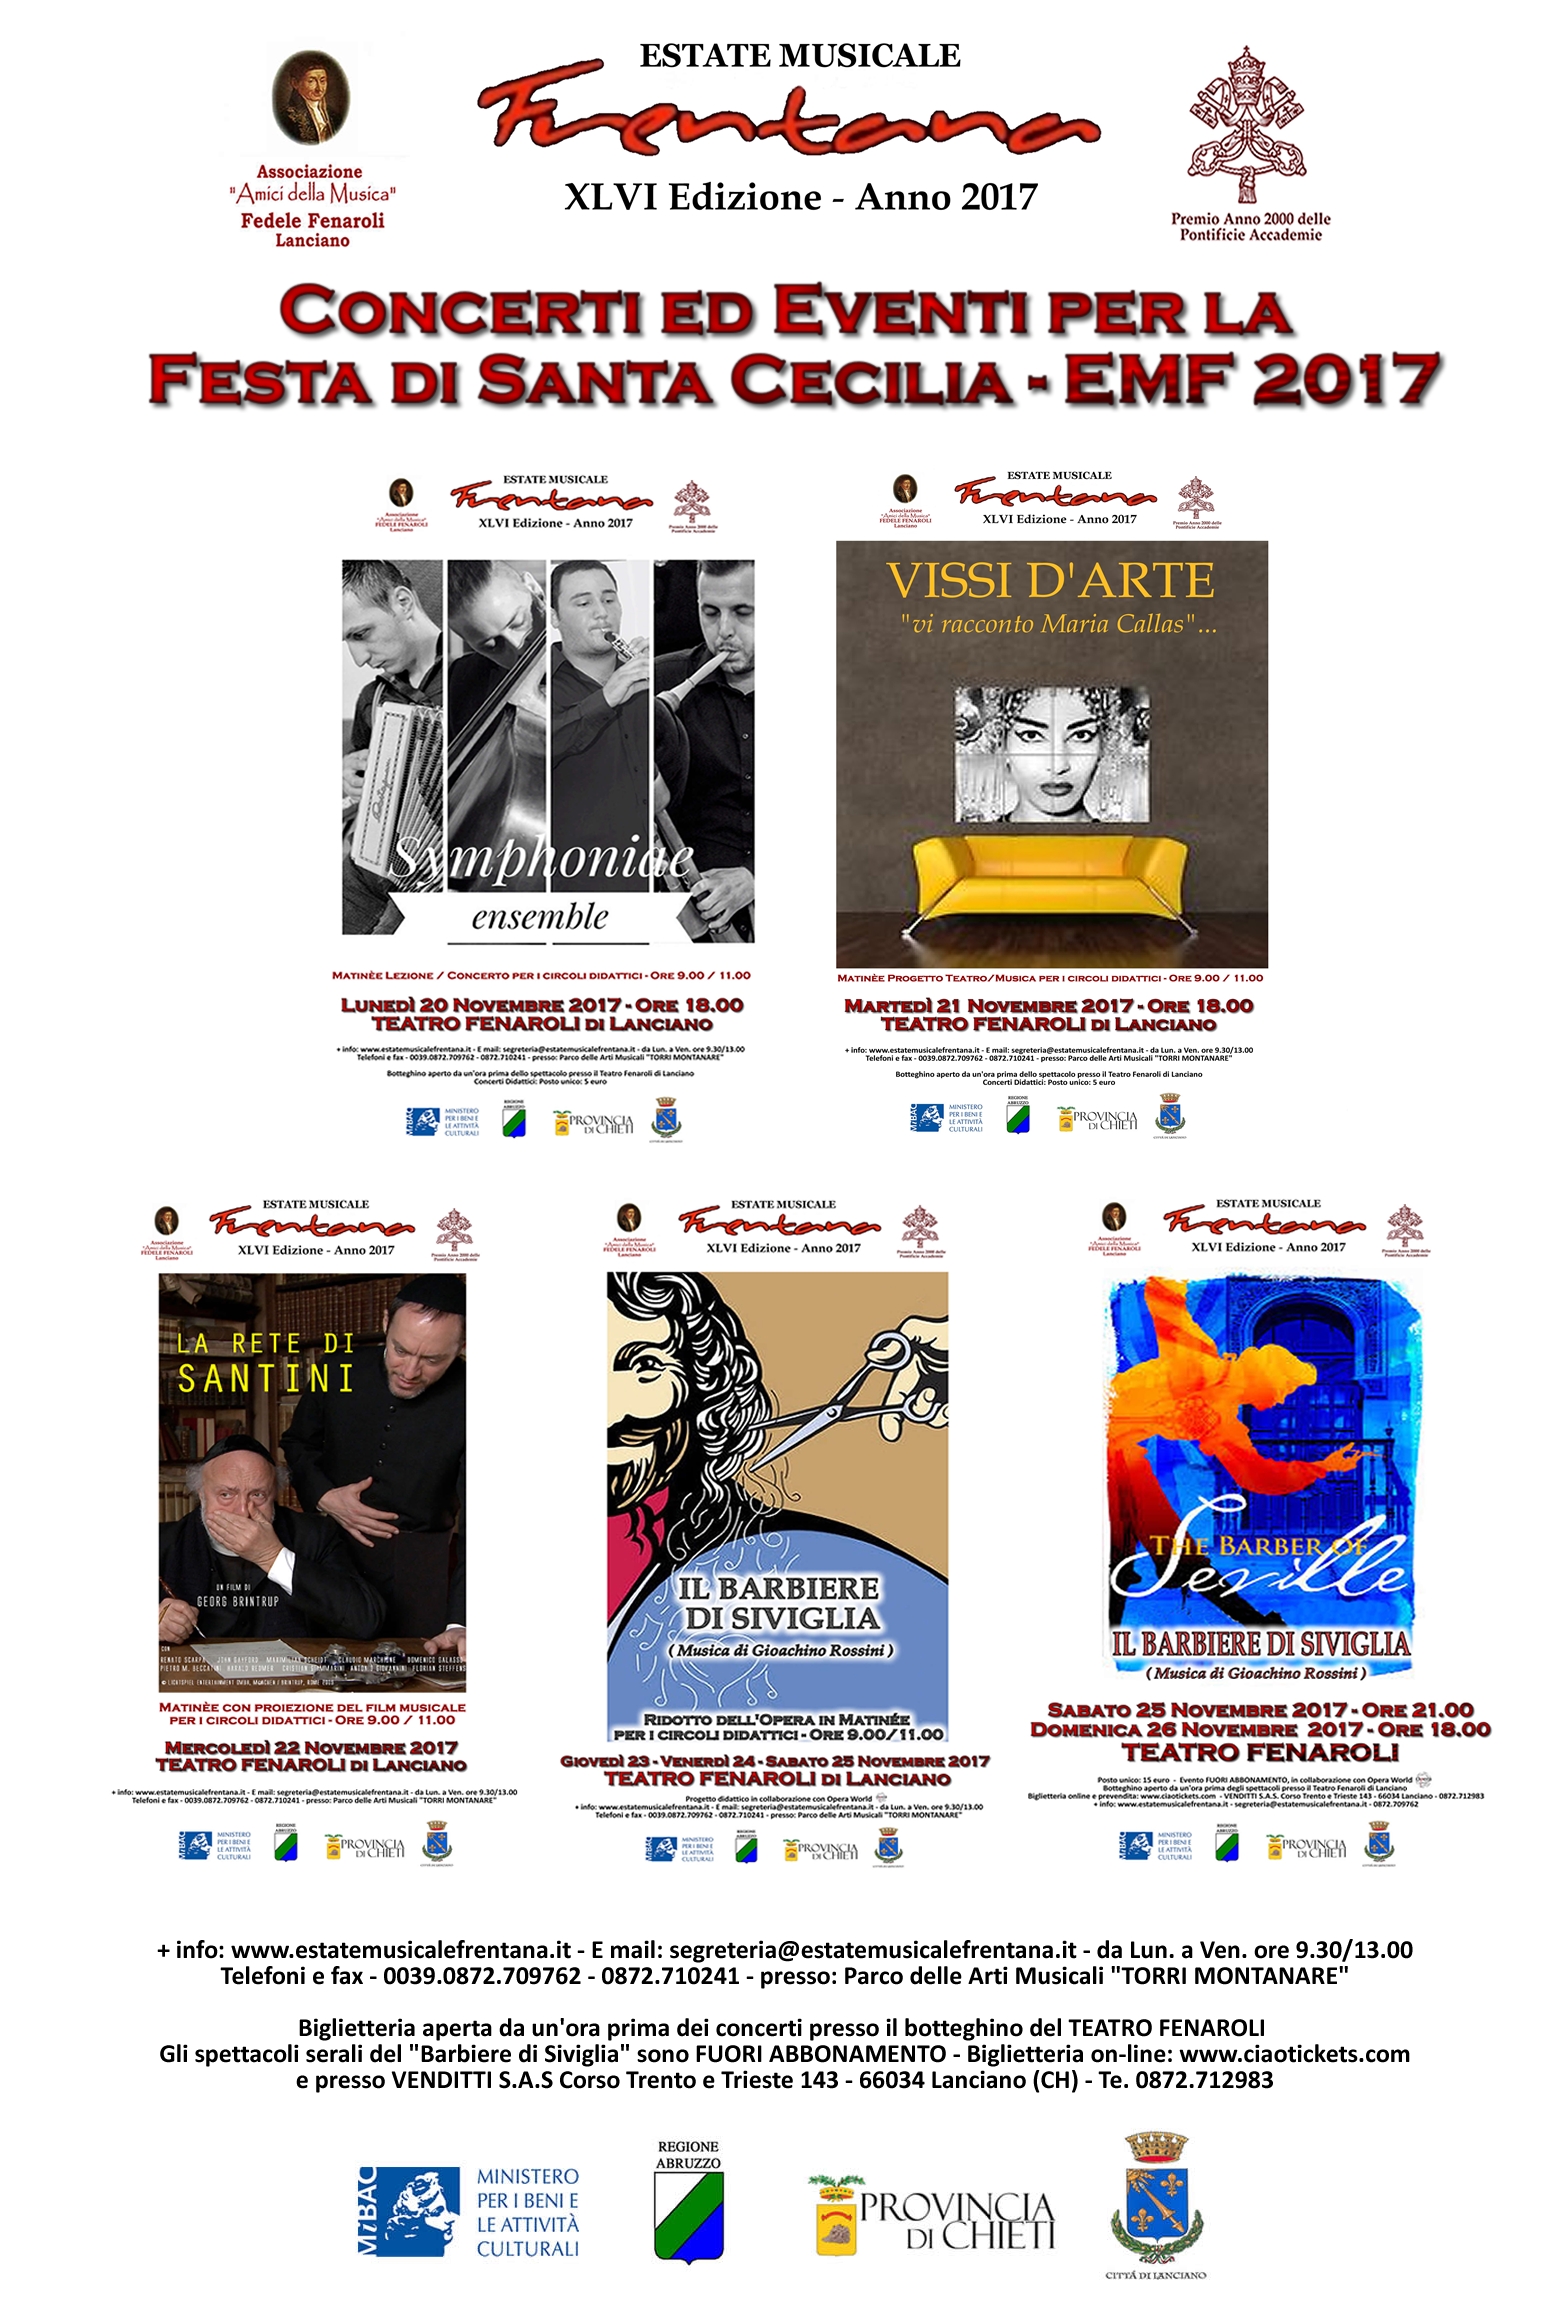 EVENTI PER LA FESTA DI SANTA CECILIA - EMF 2017